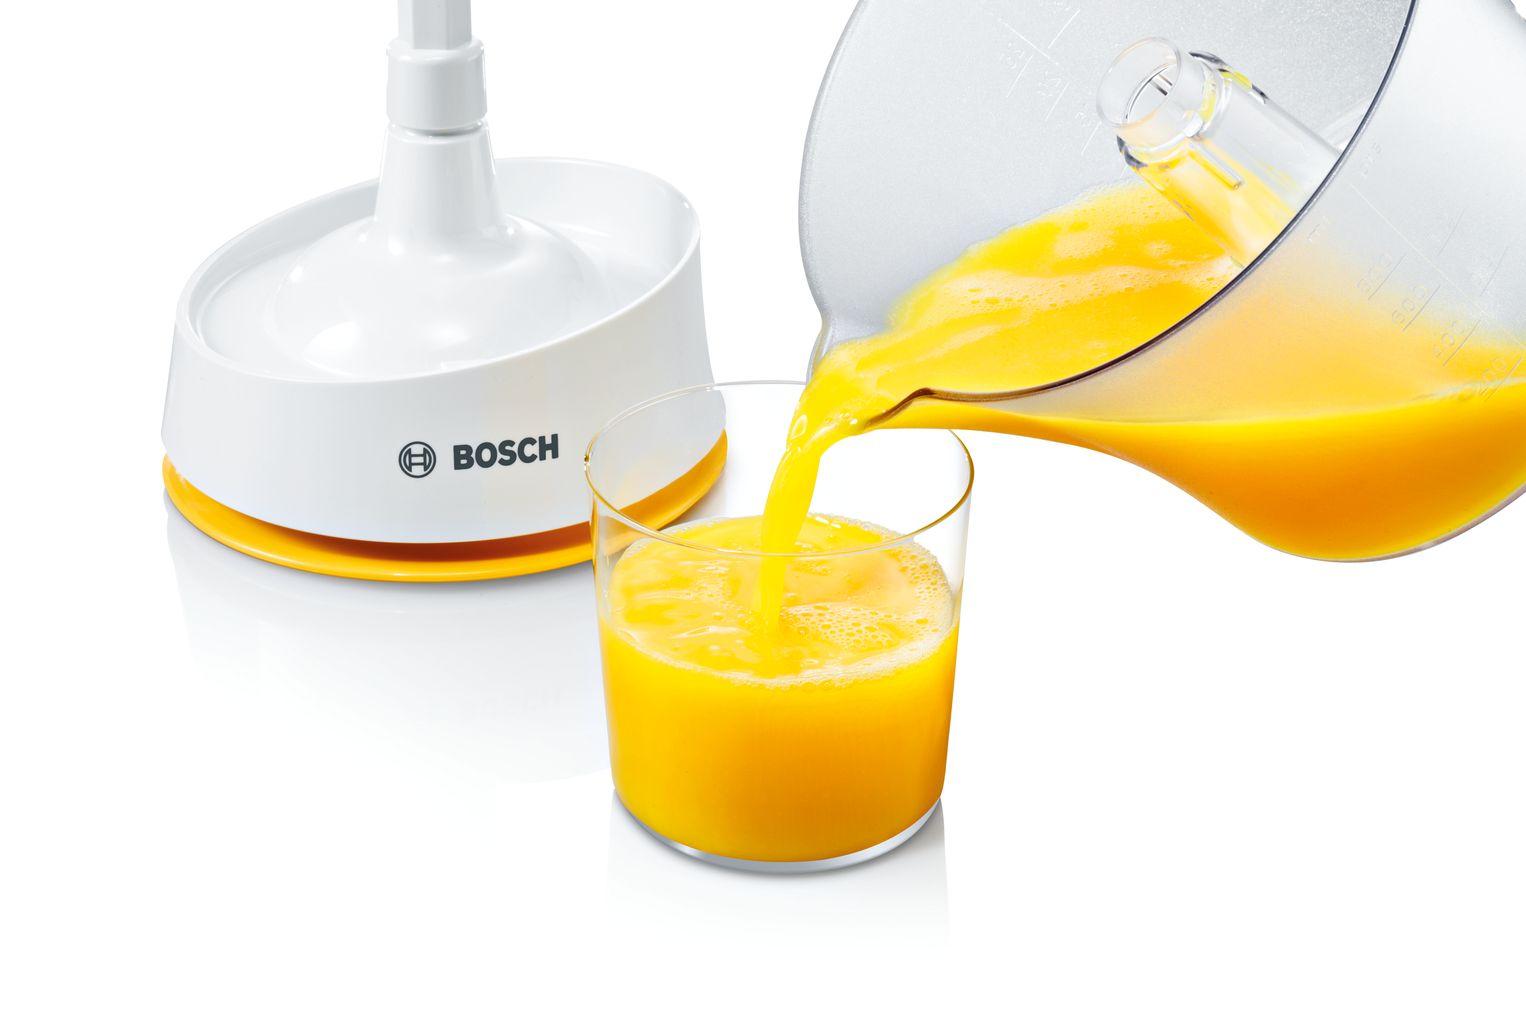 Selected image for Bosch MCP3000N Ručni sokovnik, 0,8 l, 25 W, Beli